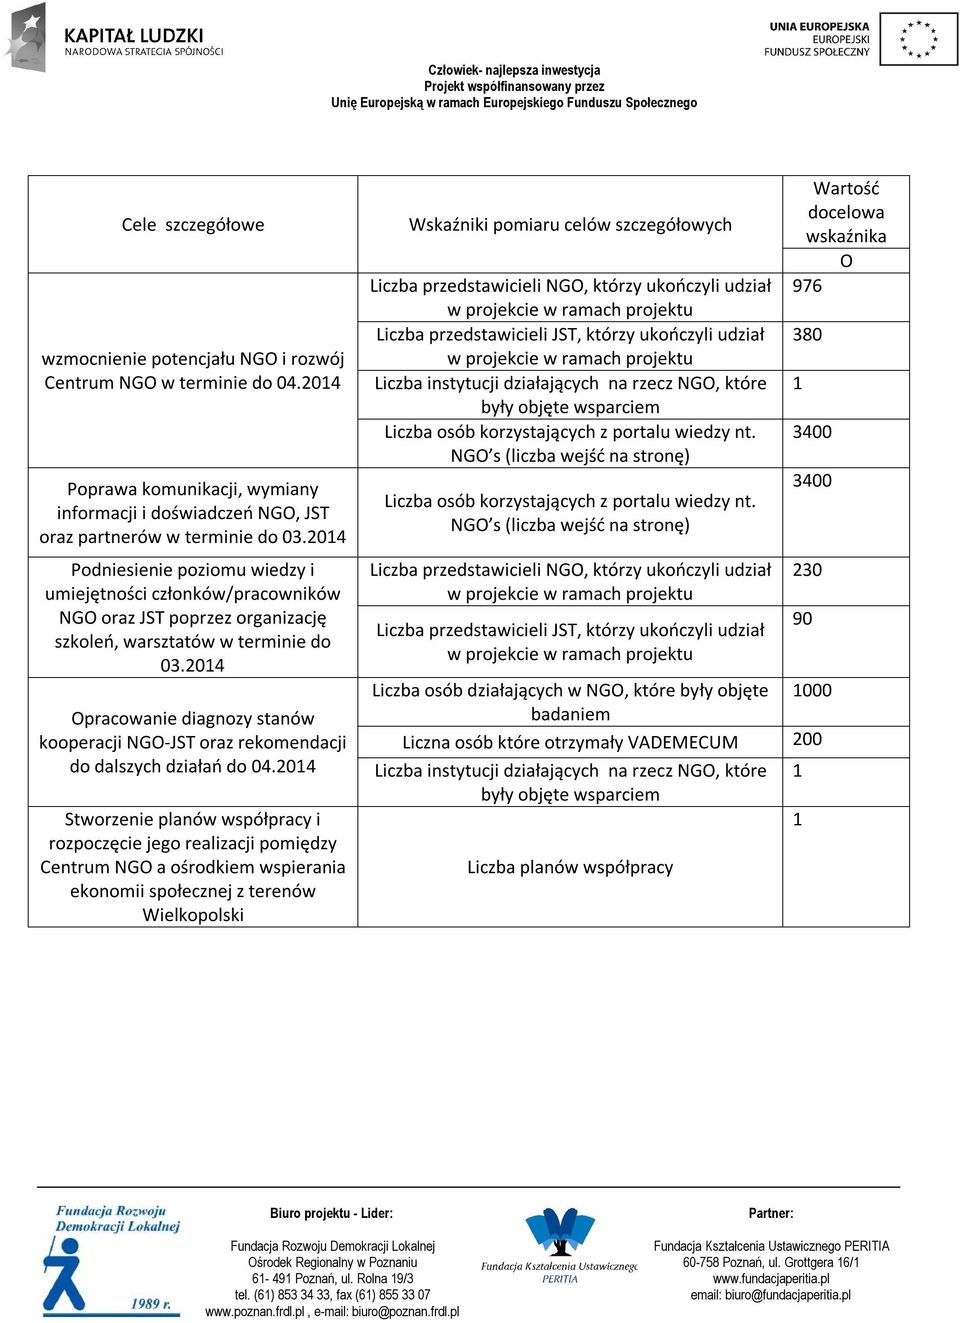 2014 Opracowanie diagnozy stanów kooperacji NGO-JST oraz rekomendacji do dalszych działań do 04.